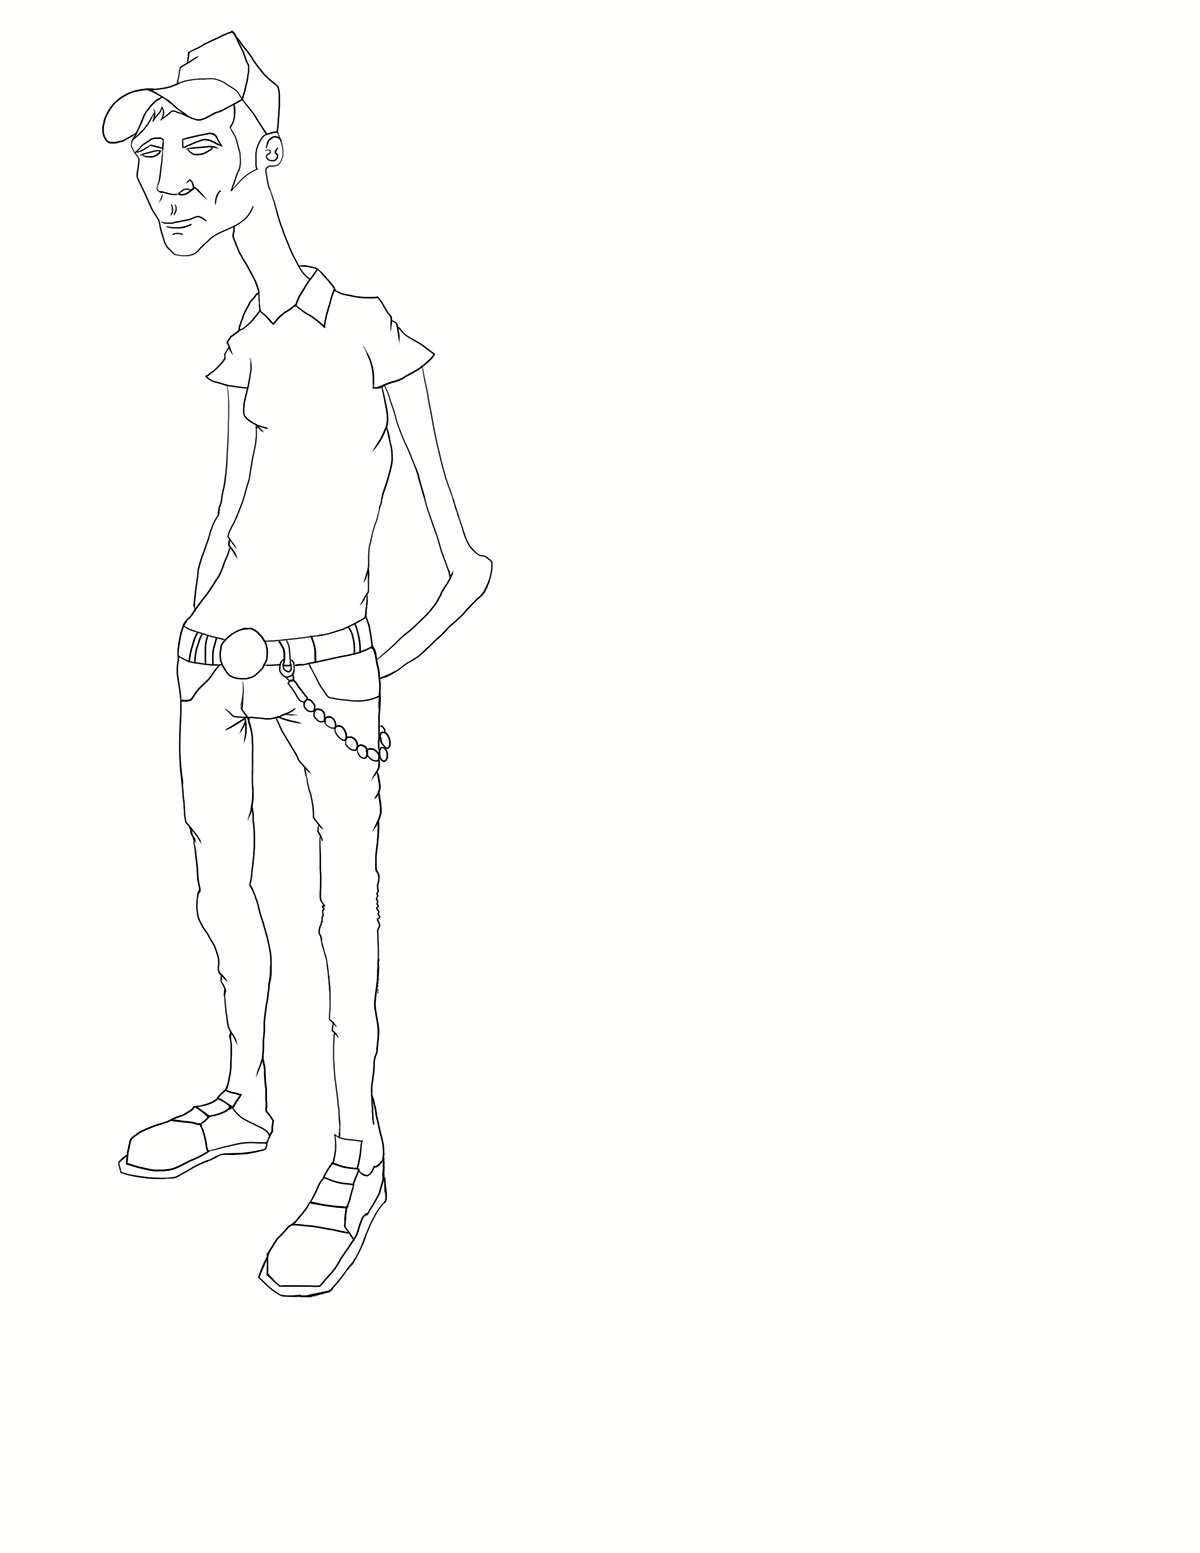 Character design  Cartooning  skinny Drawing  Digital Art  jefero   ILLUSTRATION  sketch